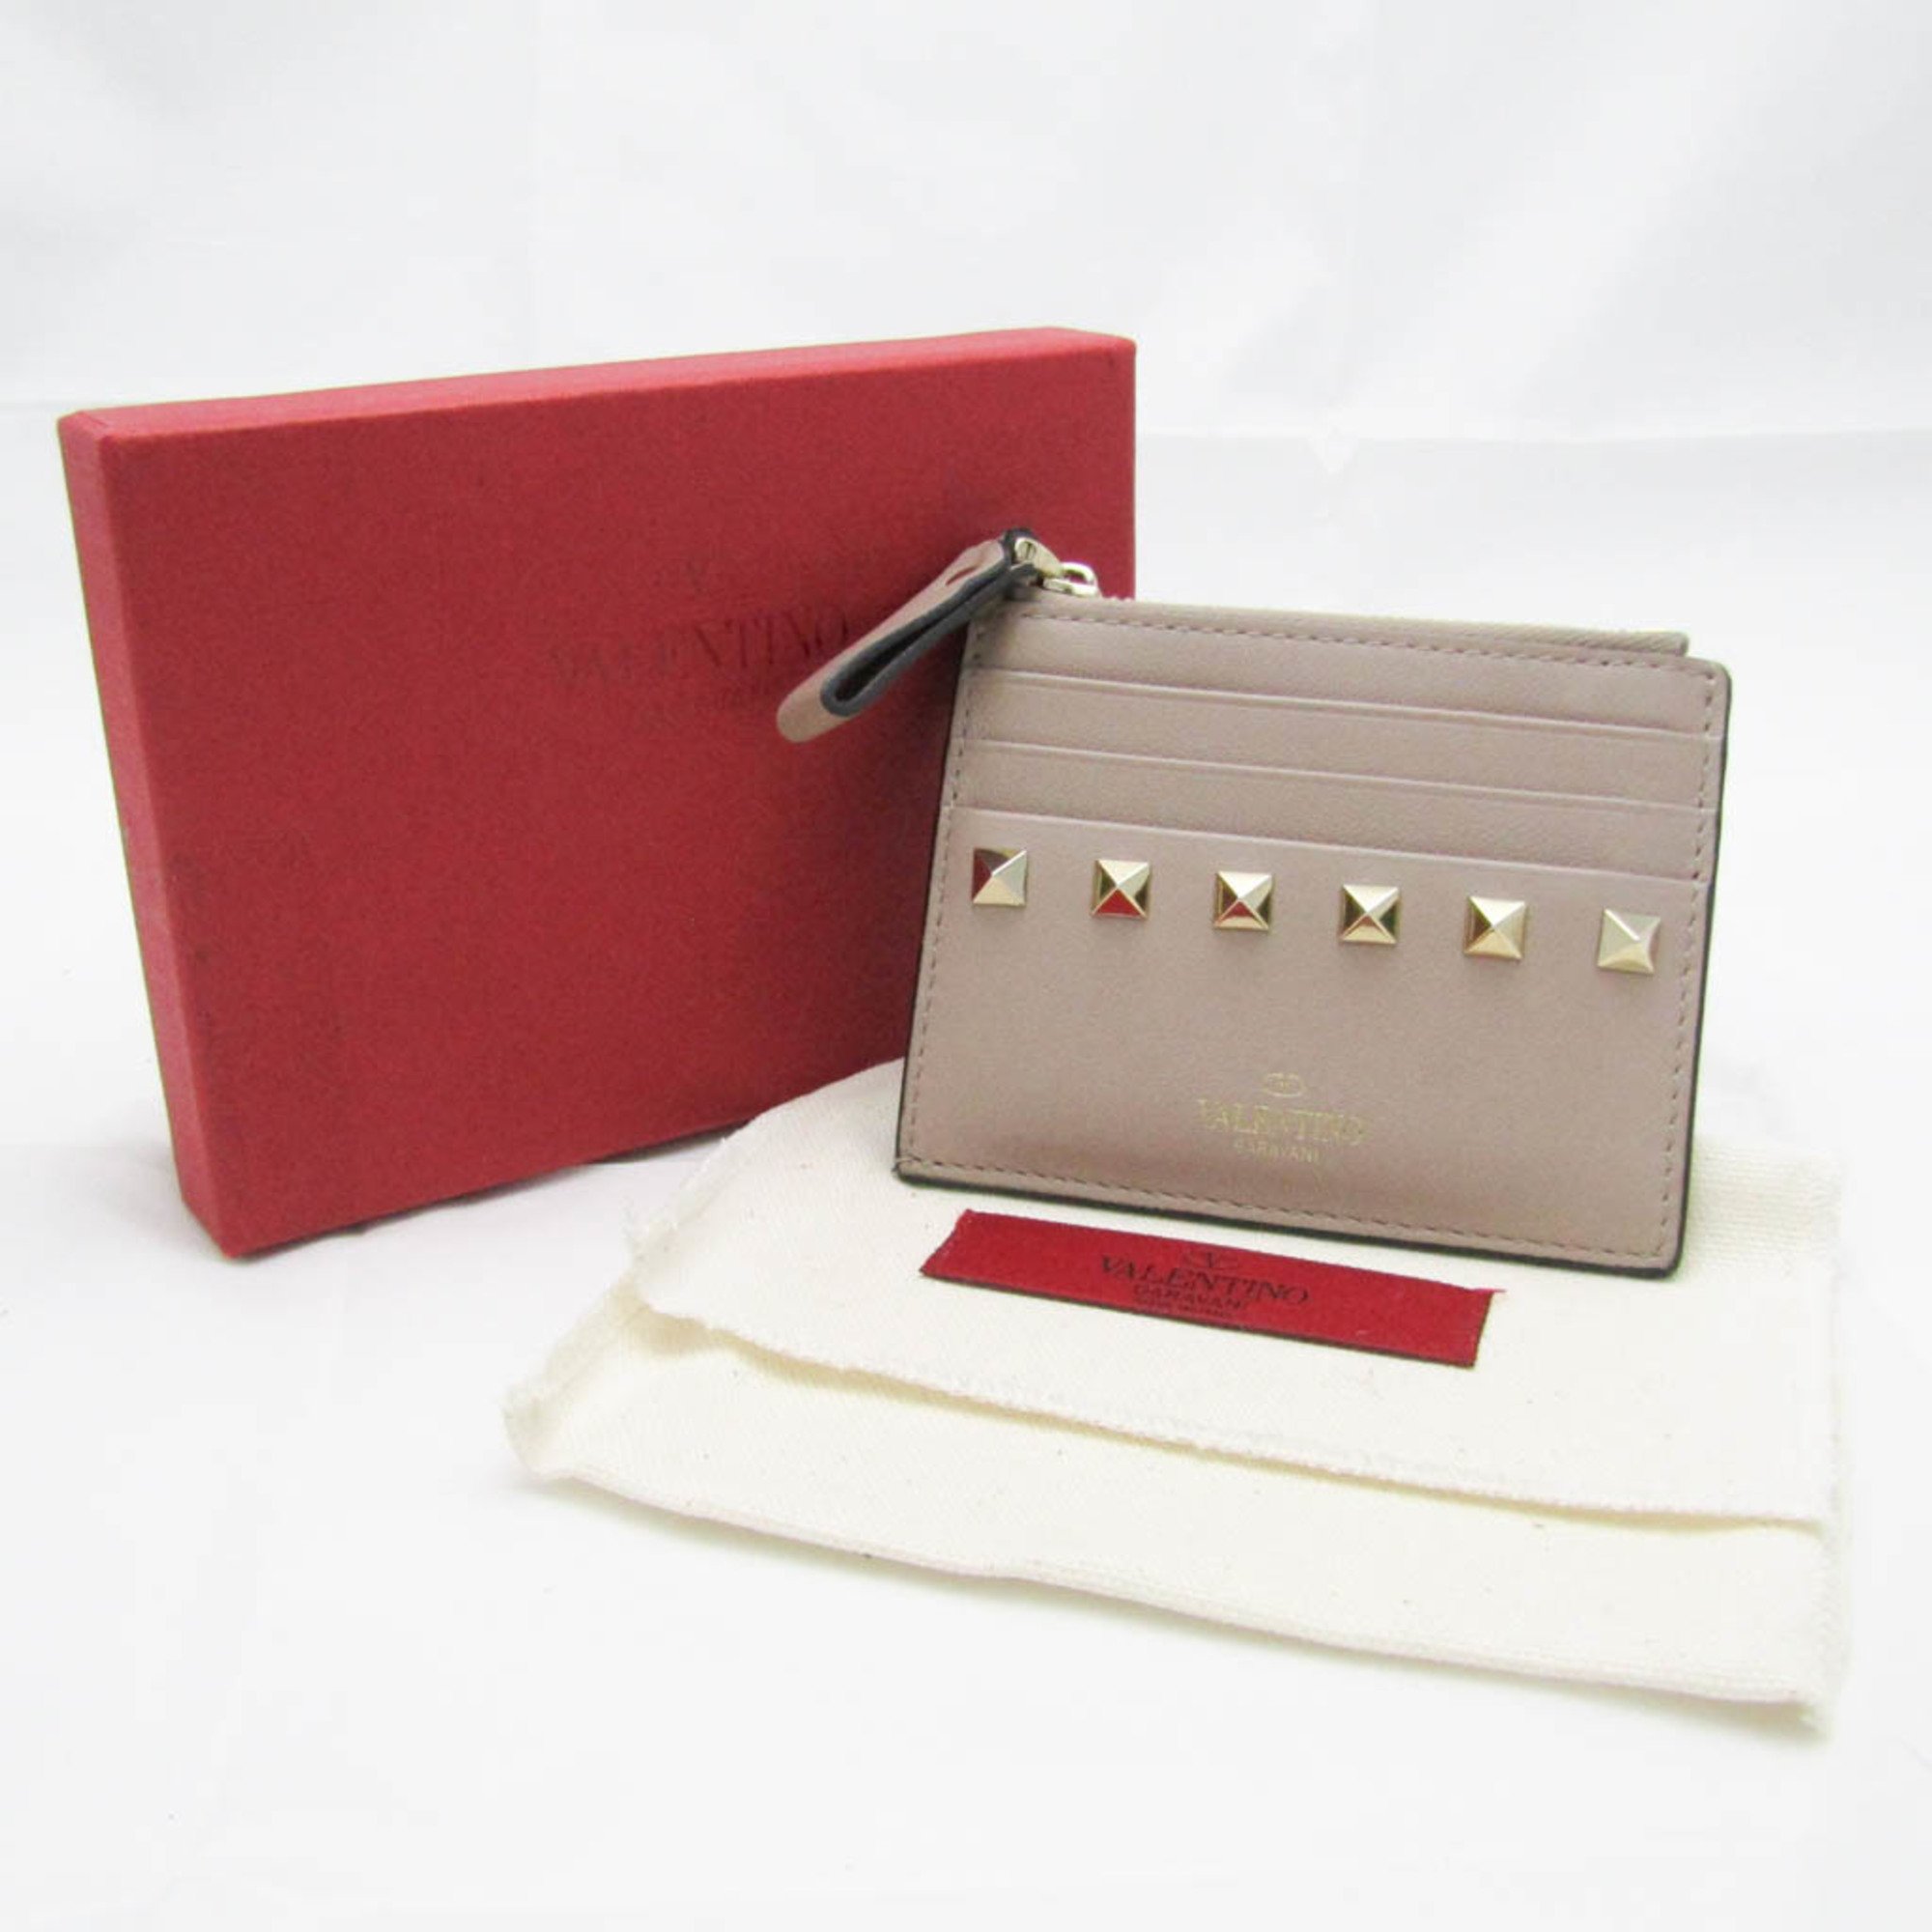 Valentino Garavani Lockstuds TW2P0T35BOL Leather Card Case Pink Beige